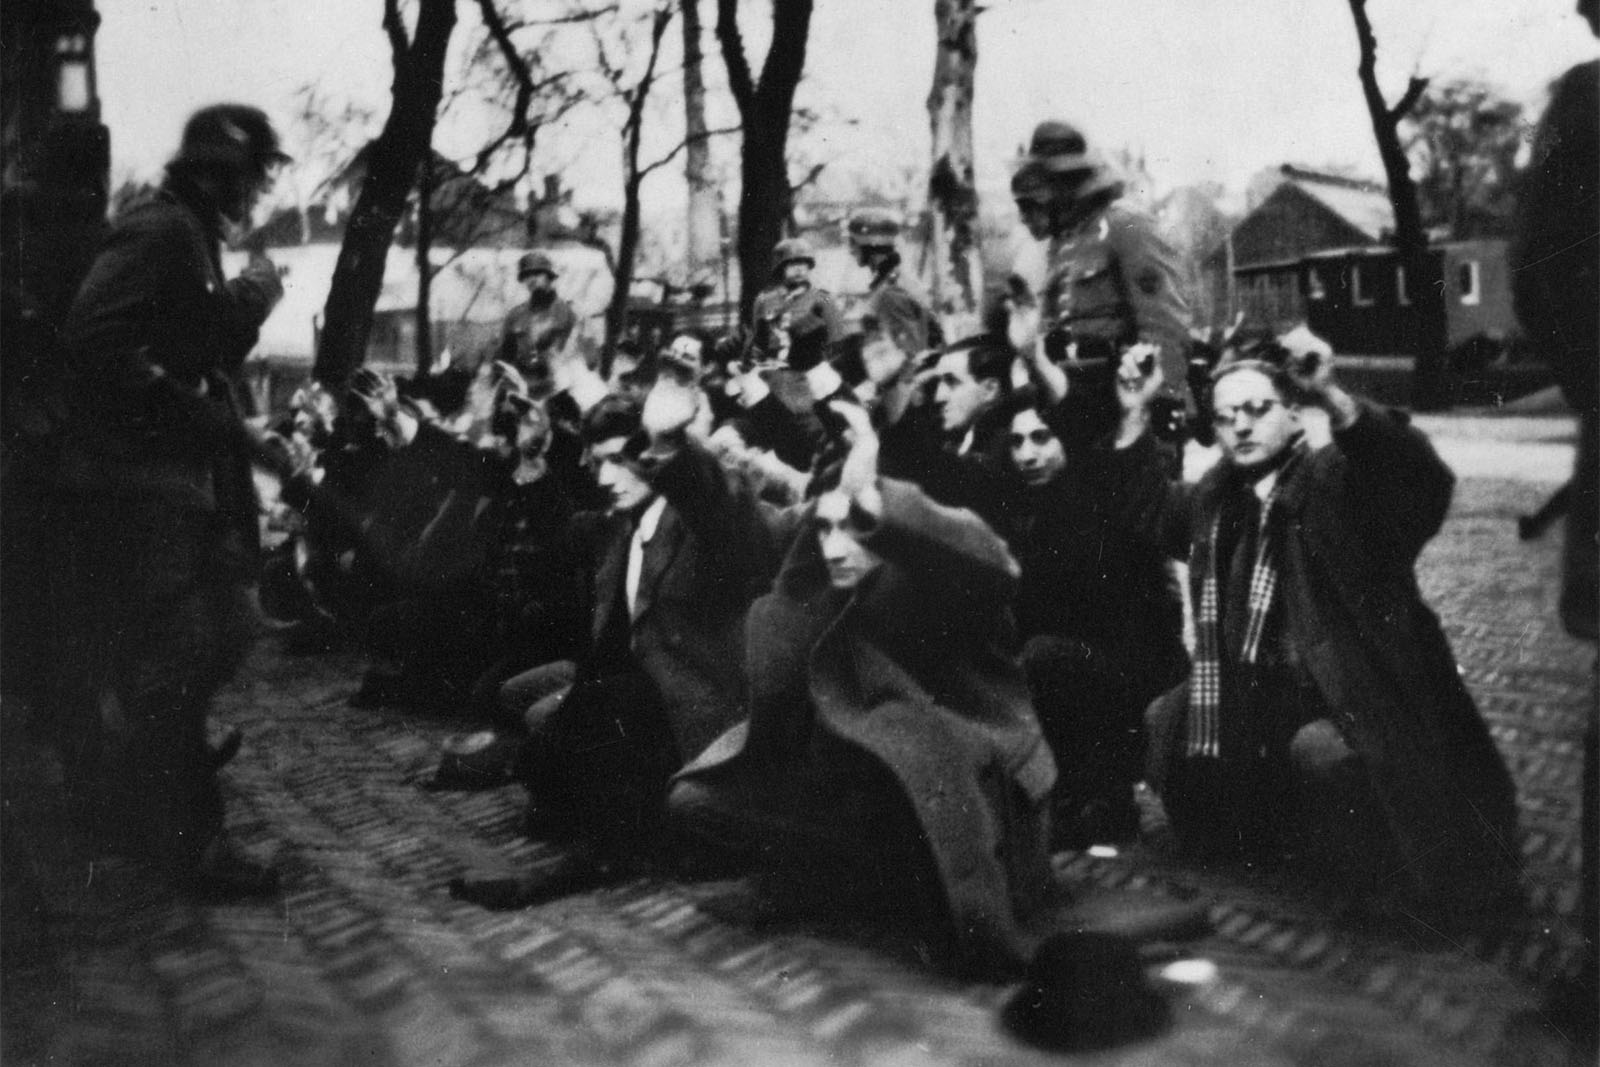 Dutch Jews arrested by Nazi soldgiers, February 1941 (Photograph: Fotocollectie Rijksvoorlichtingsdienst, Fotograaf onbekend)